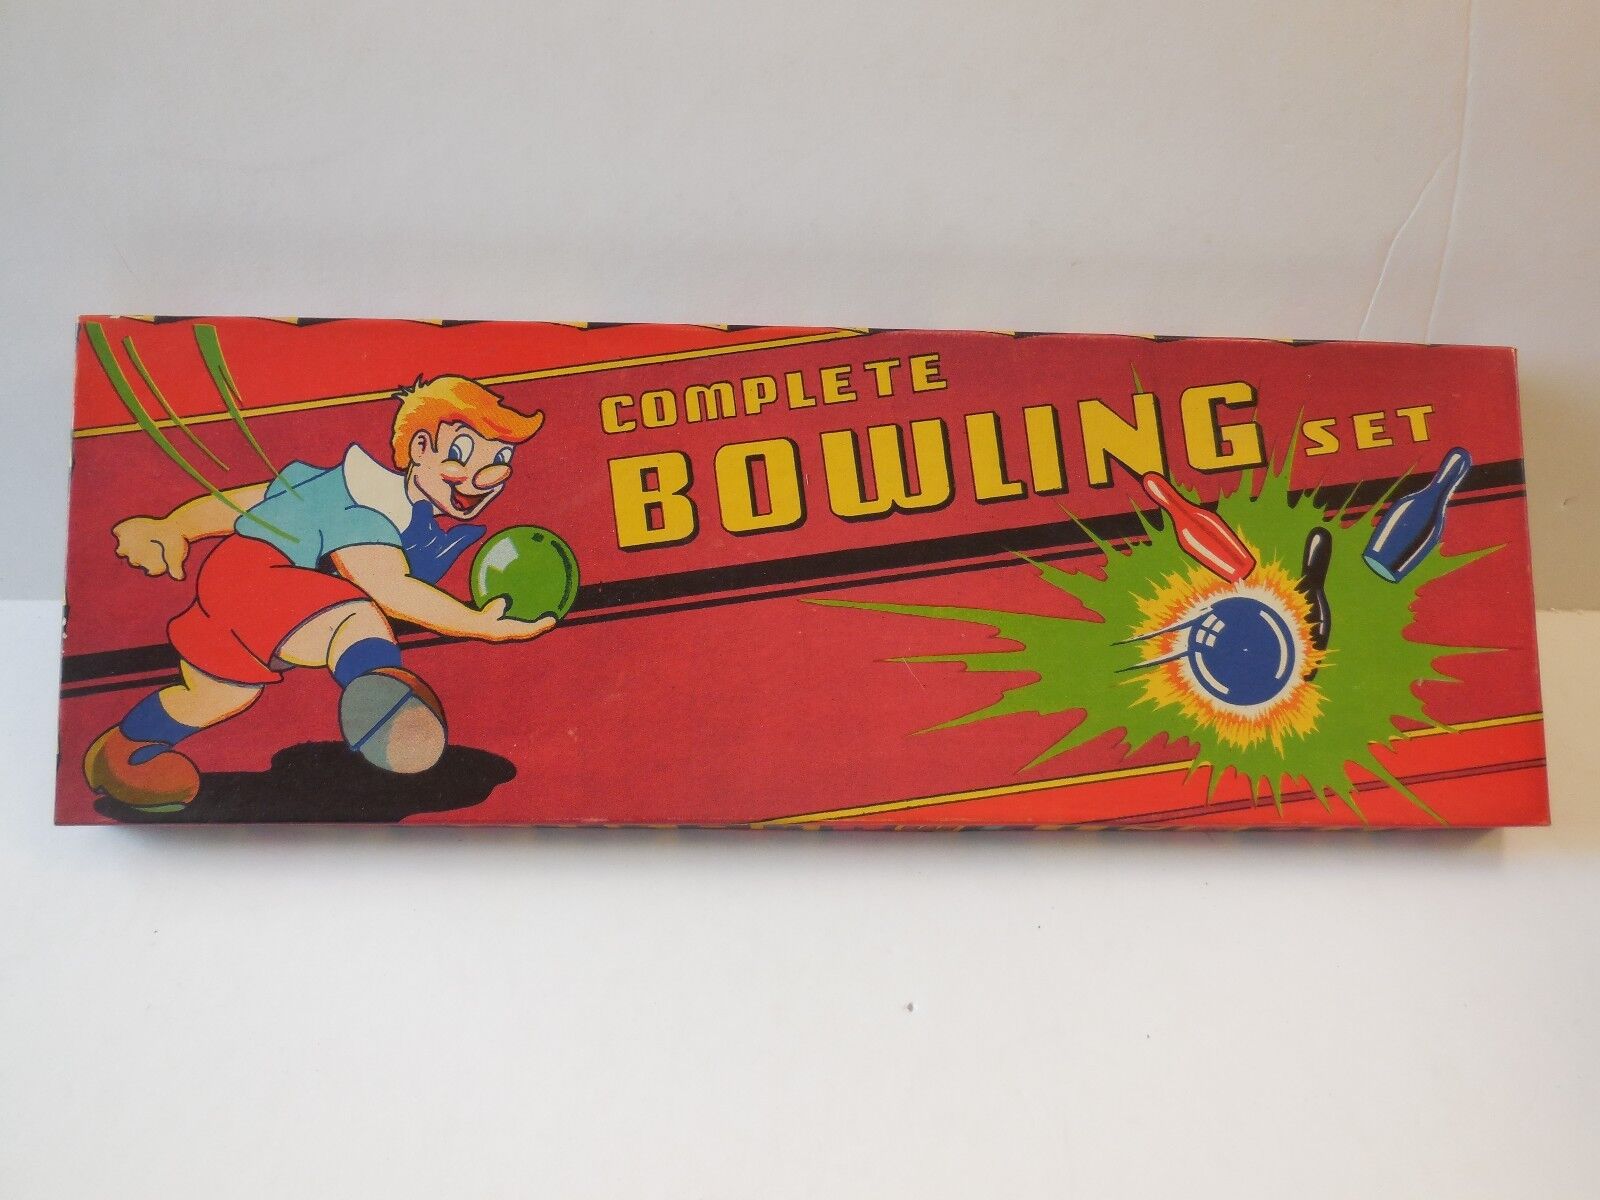 Complete Bowling Set    Vintage    Original Box     1950s/60s